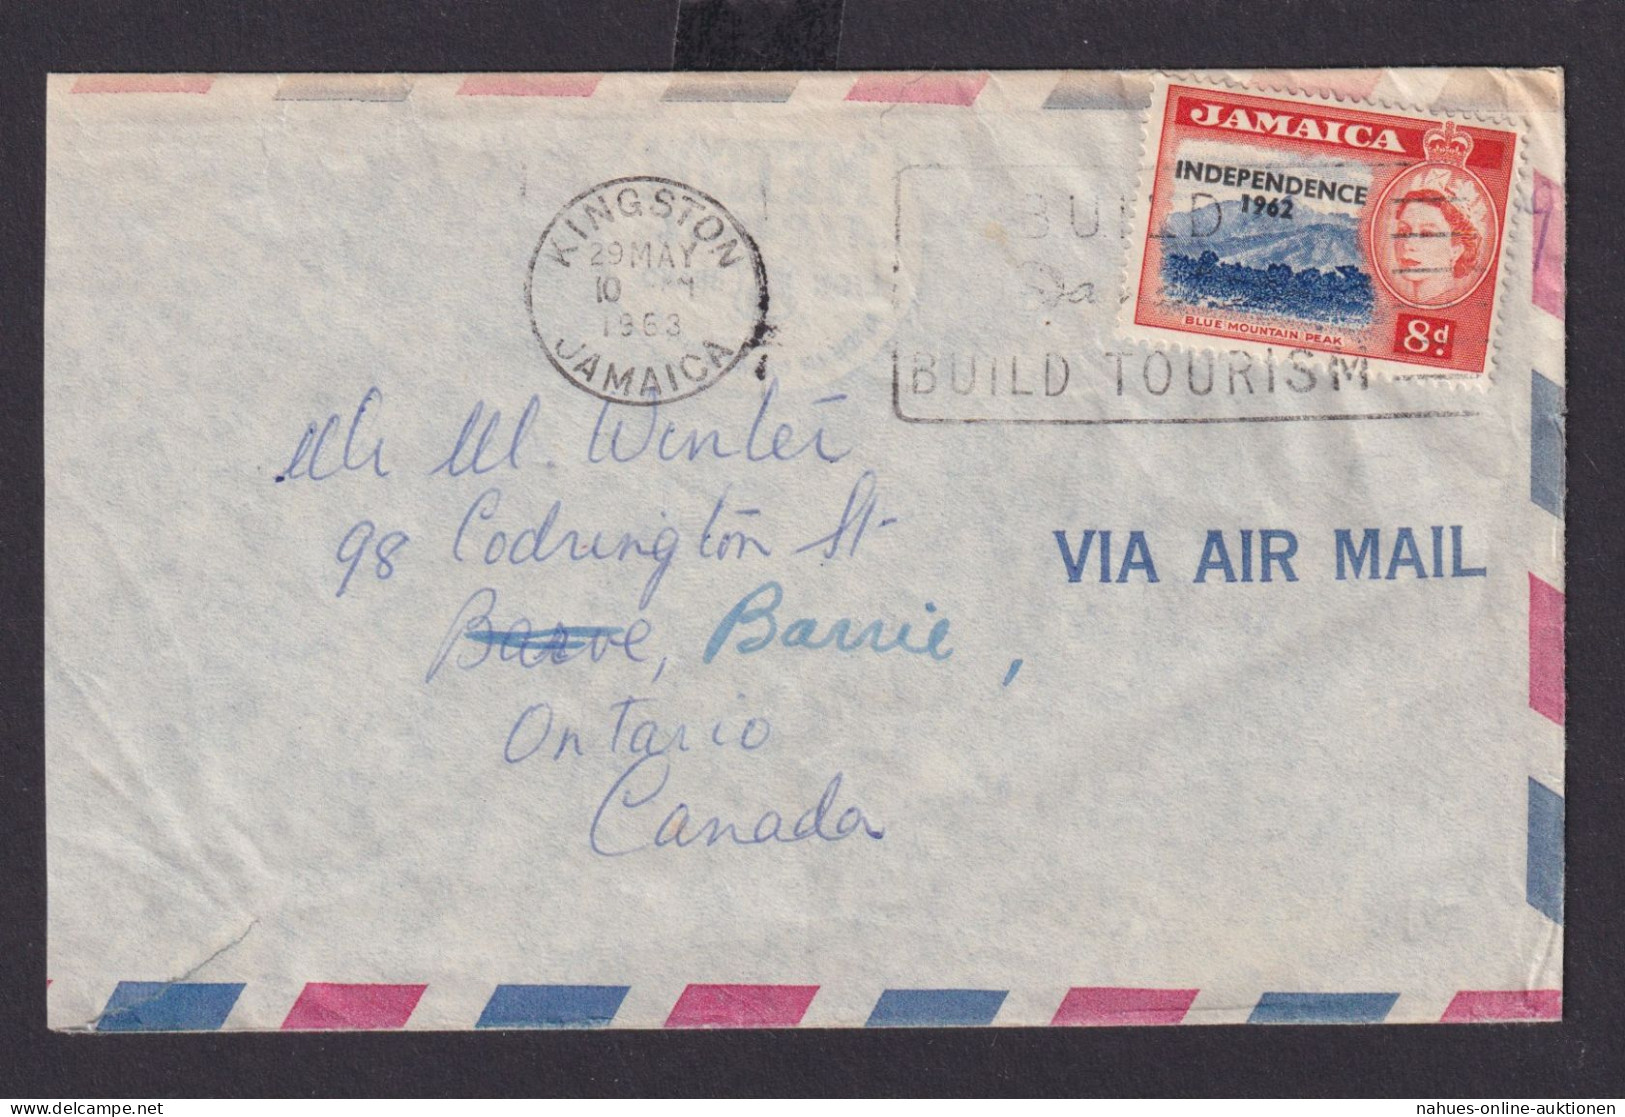 Jamaika Brief EF Queen Elisabeth 8d Masch.St. Kingston Build Tourism N. Ontario - Jamaica (1962-...)